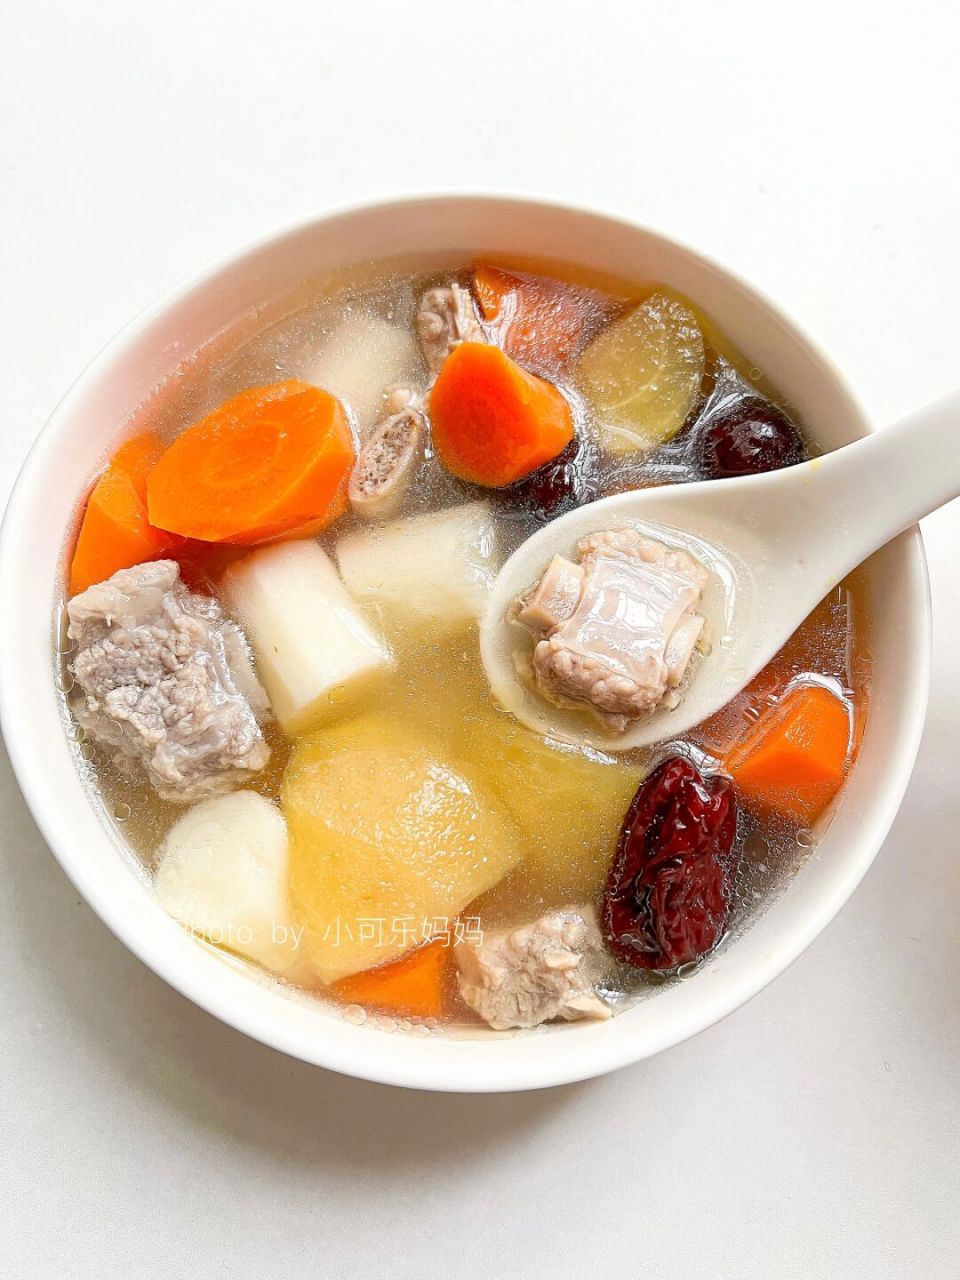 天气转凉,最合适喝汤了,快试试这道苹果山药红枣排骨汤吧~排骨和水果